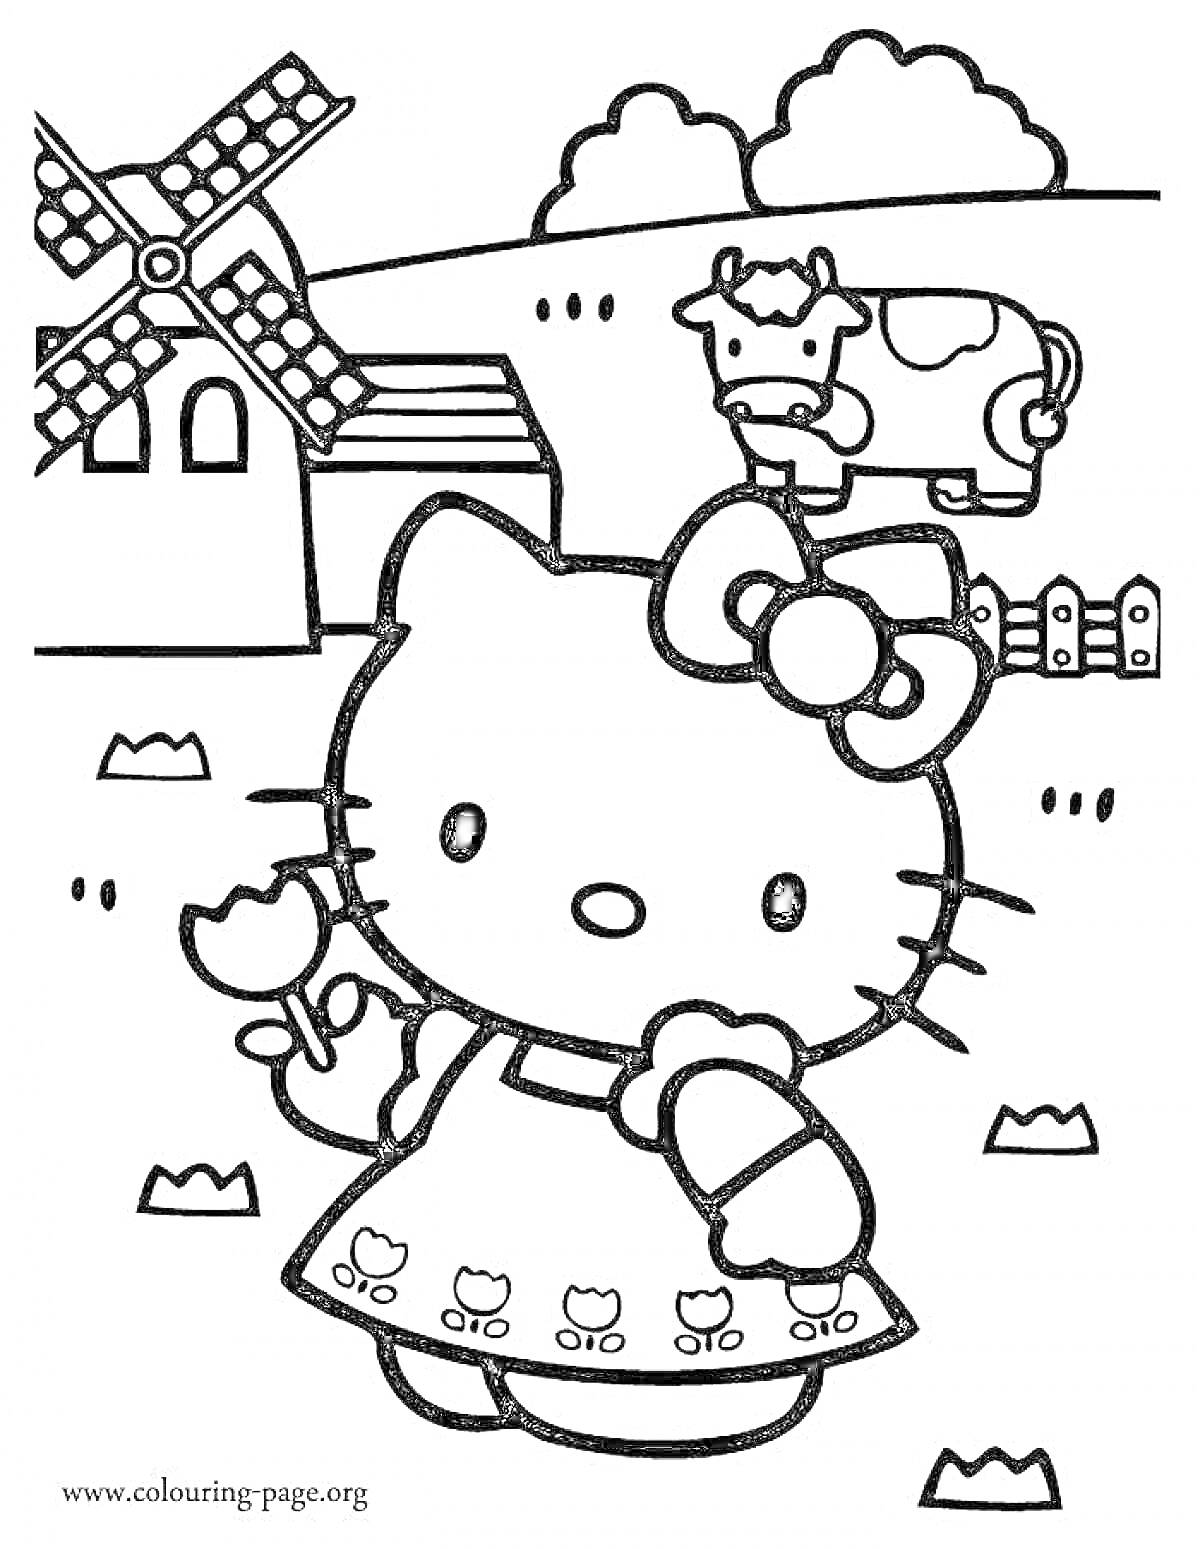 Раскраска Картинка для раскраски с Хеллоу Китти, стоящей на лугу. В руках Хеллоу Китти держит цветок, она одета в платье с изображением цветков. На заднем плане расположена корова, дом и ветряная мельница.